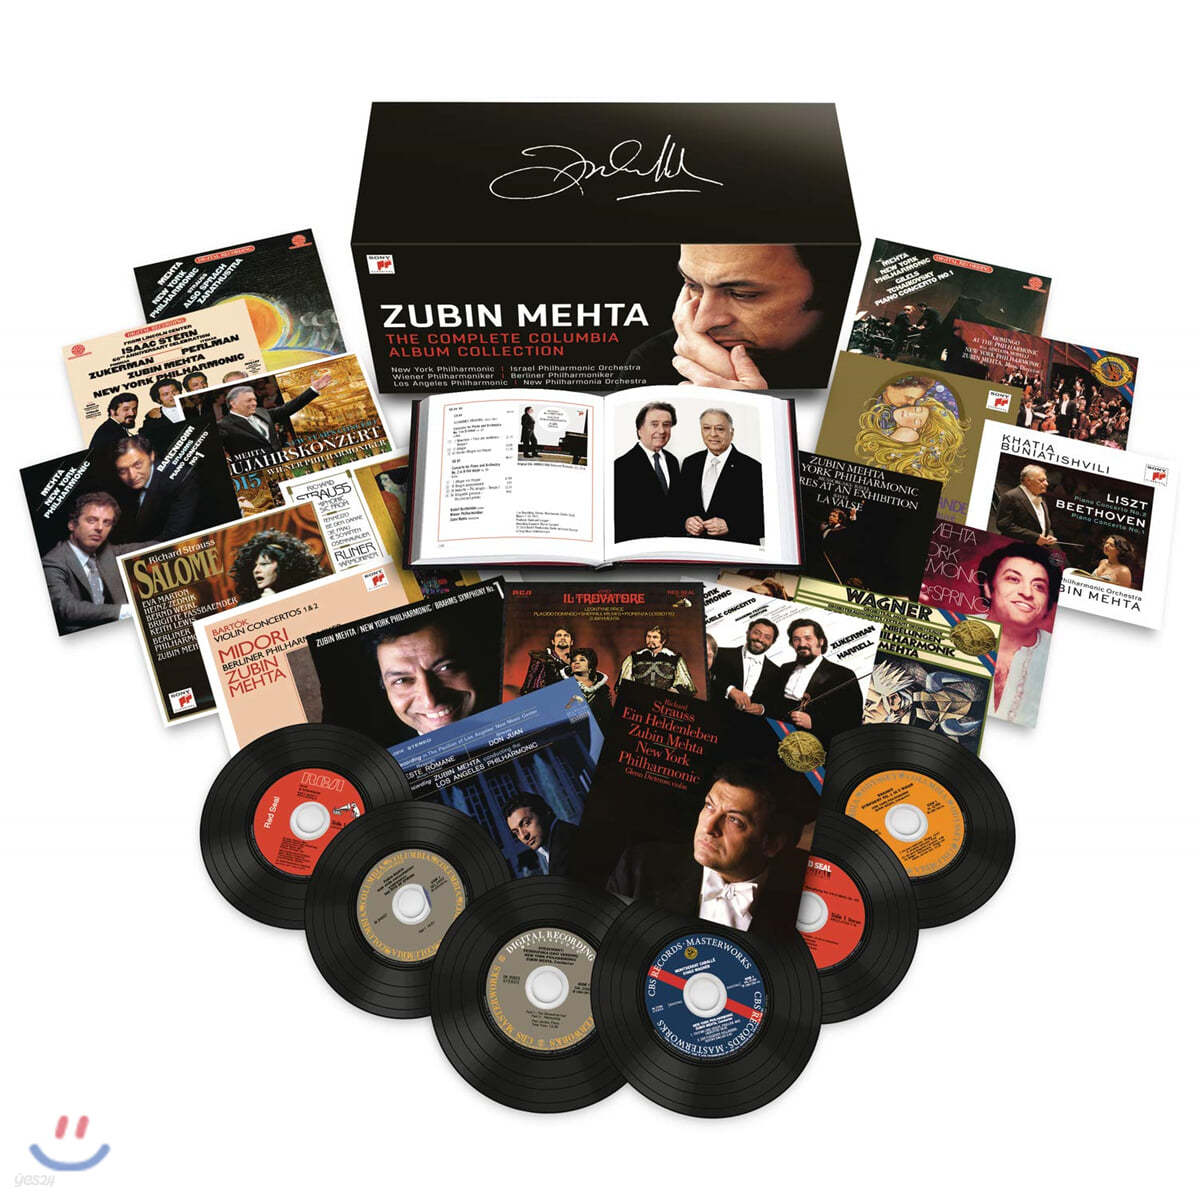 주빈 메타 컬럼비아 레코드 녹음 전집  (Zubin Mehta - The Complete Columbia Album Collection)